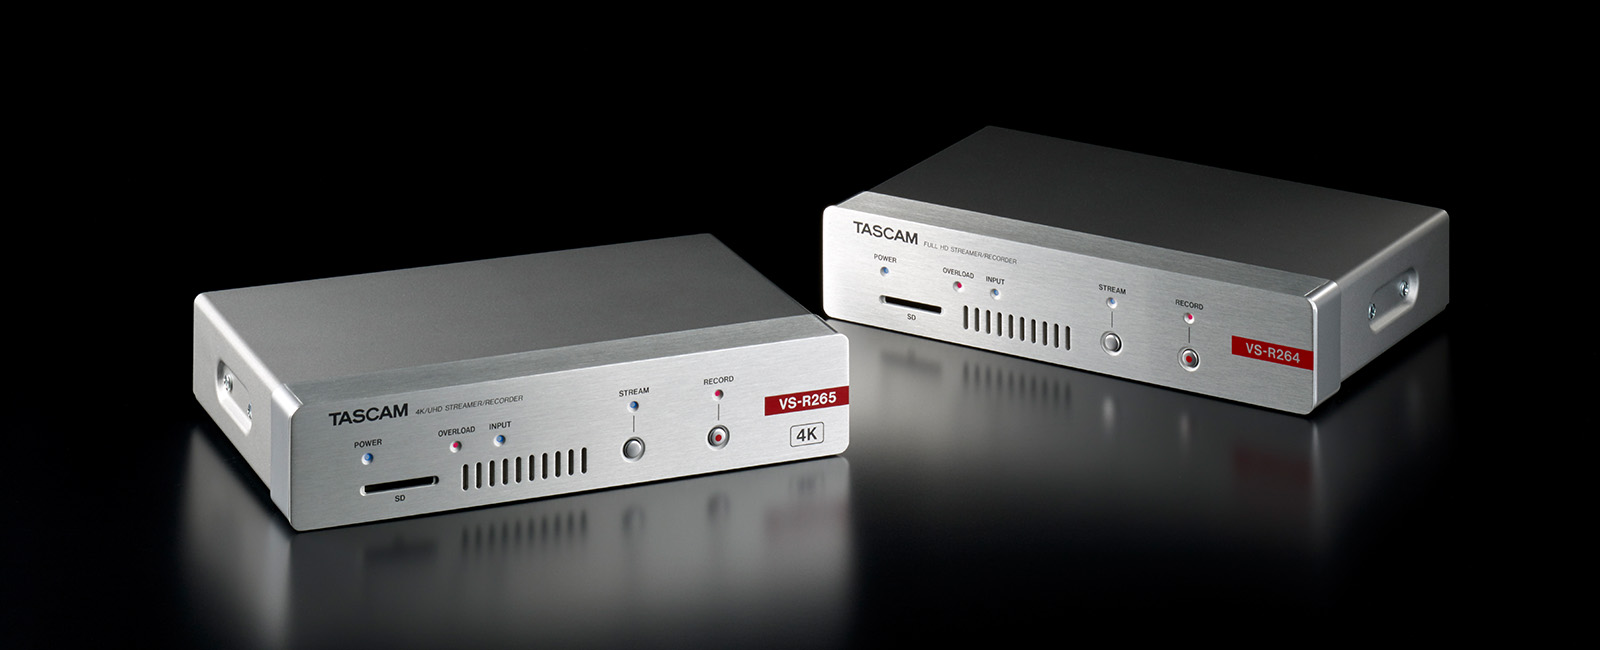 TASCAM Introduces VS Series AV over IP Appliances For Commercial AV and Live Video Streaming App